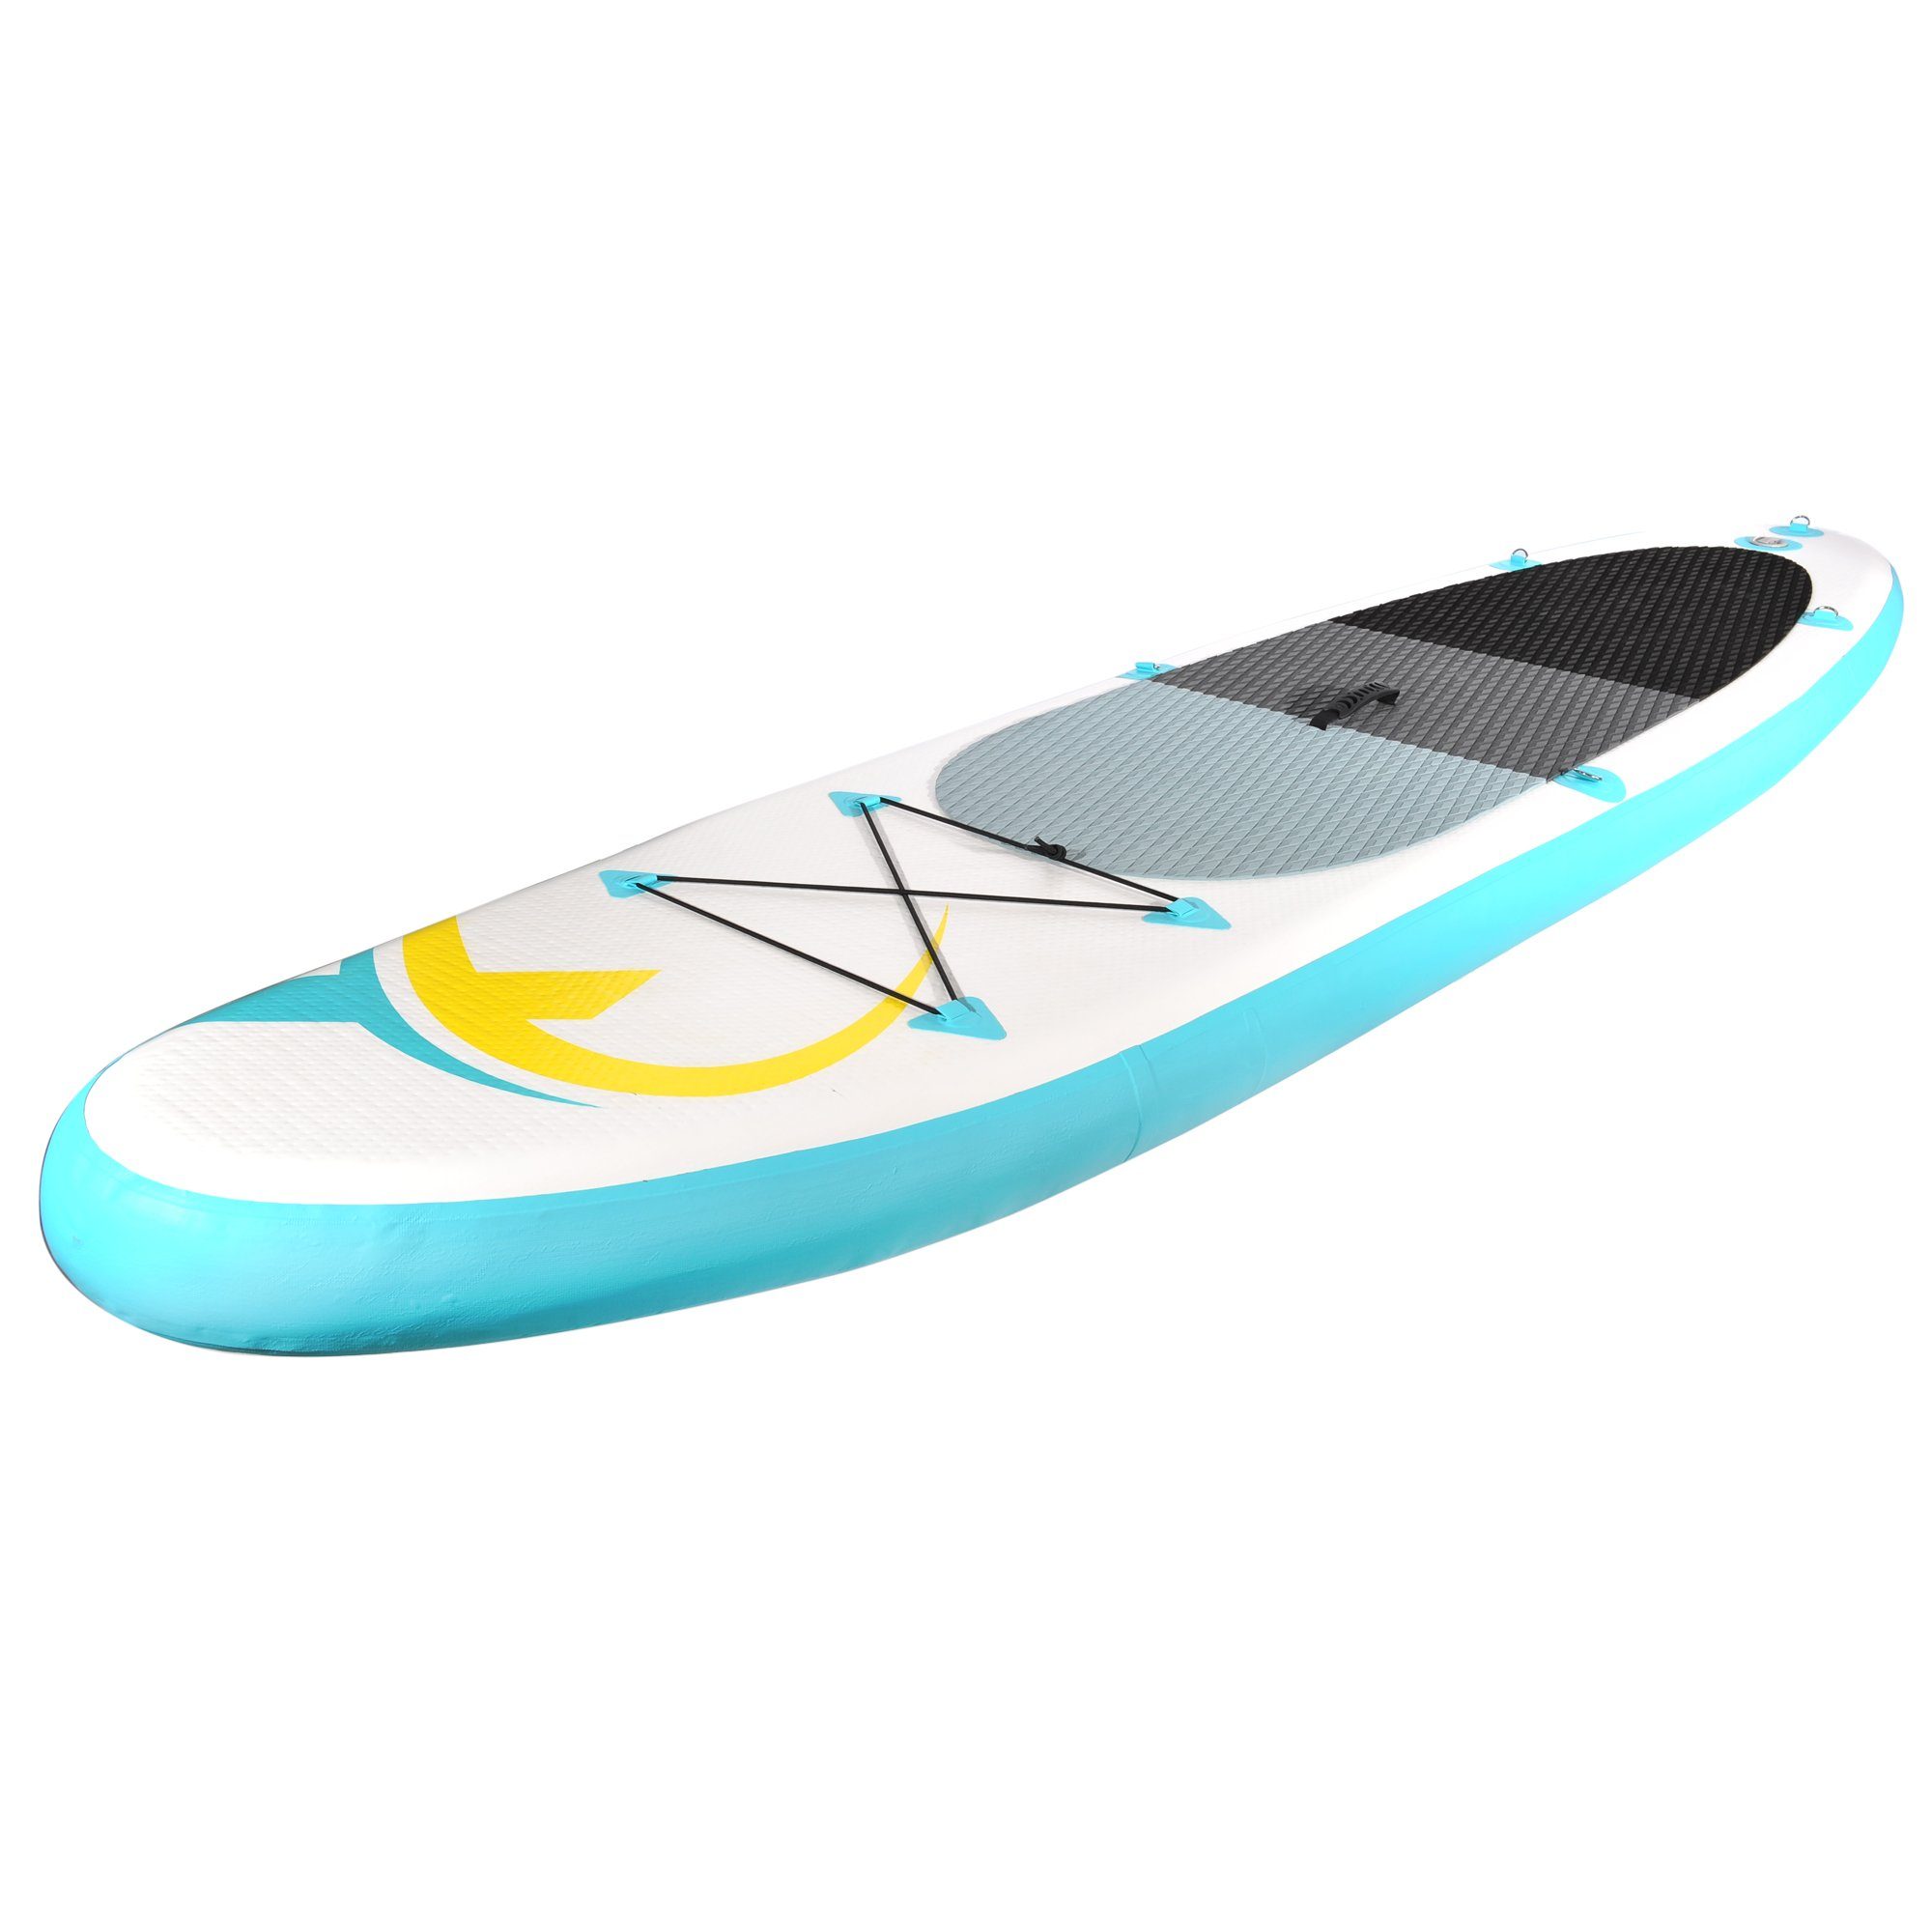 NEMAXX Inflatable SUP-Board, Nemaxx Surf-Board zu inkl. aufblasbar 320x78x15cm, Stand türkis/gelb Paddel - - up - & Board Tasche, PB320 Paddle transportieren Surfbrett, leicht